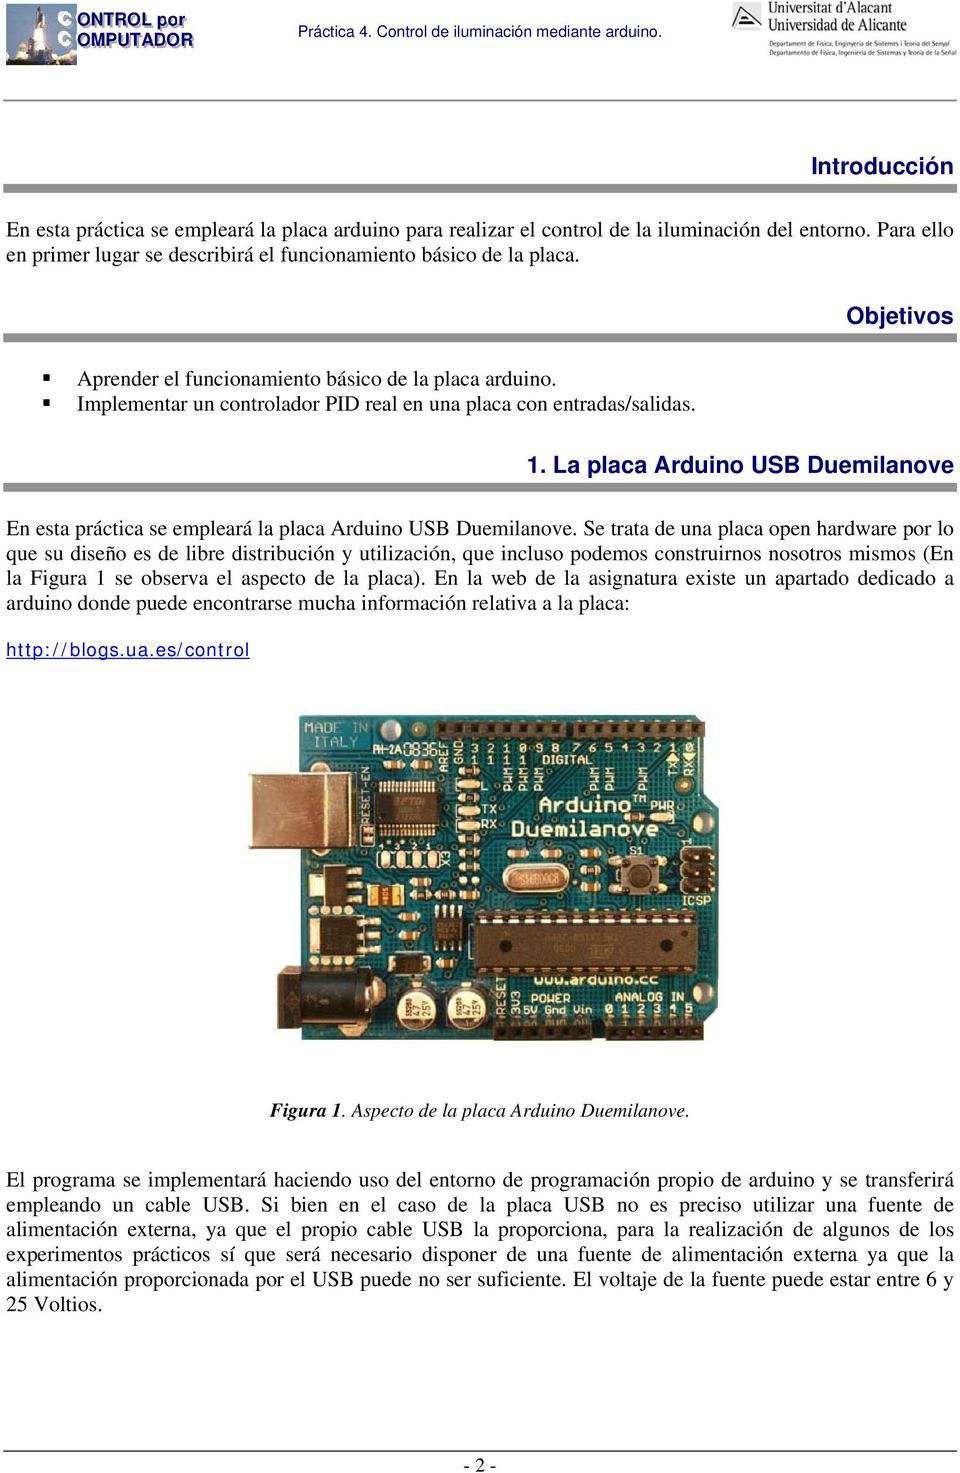 La placa Arduino USB Duemilanove En esta práctica se empleará la placa Arduino USB Duemilanove.